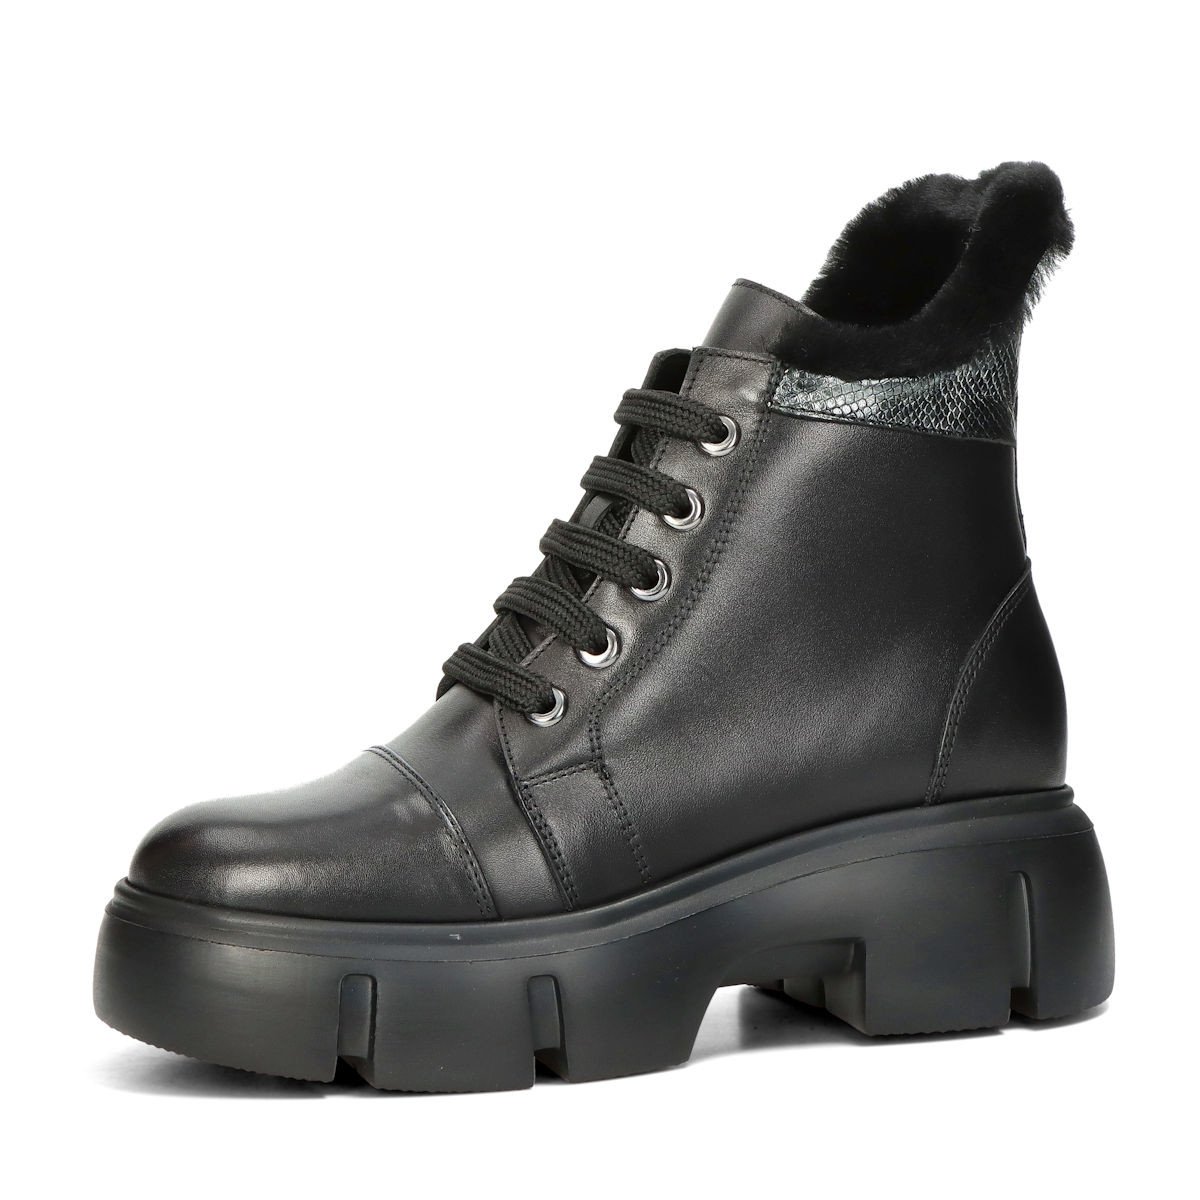 ETIMEĒ dámské zimní kotníkové boty na zip - černé - 37